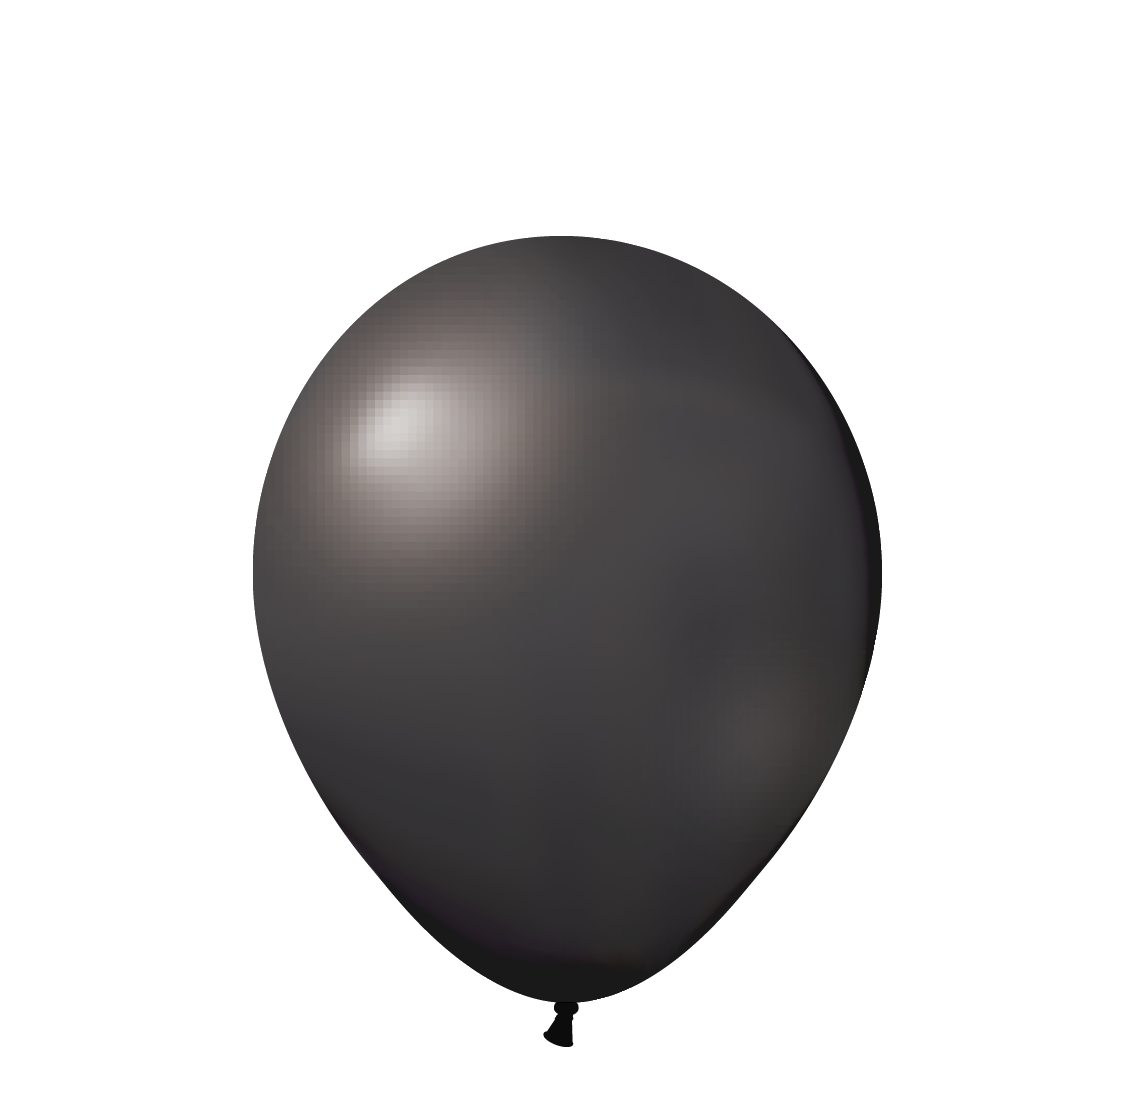 Черный воздушный шарик. Черный воздушный шар. Матовый шар воздушный. Воздушные шарики на прозрачном фоне. Резиновый воздушный шар.